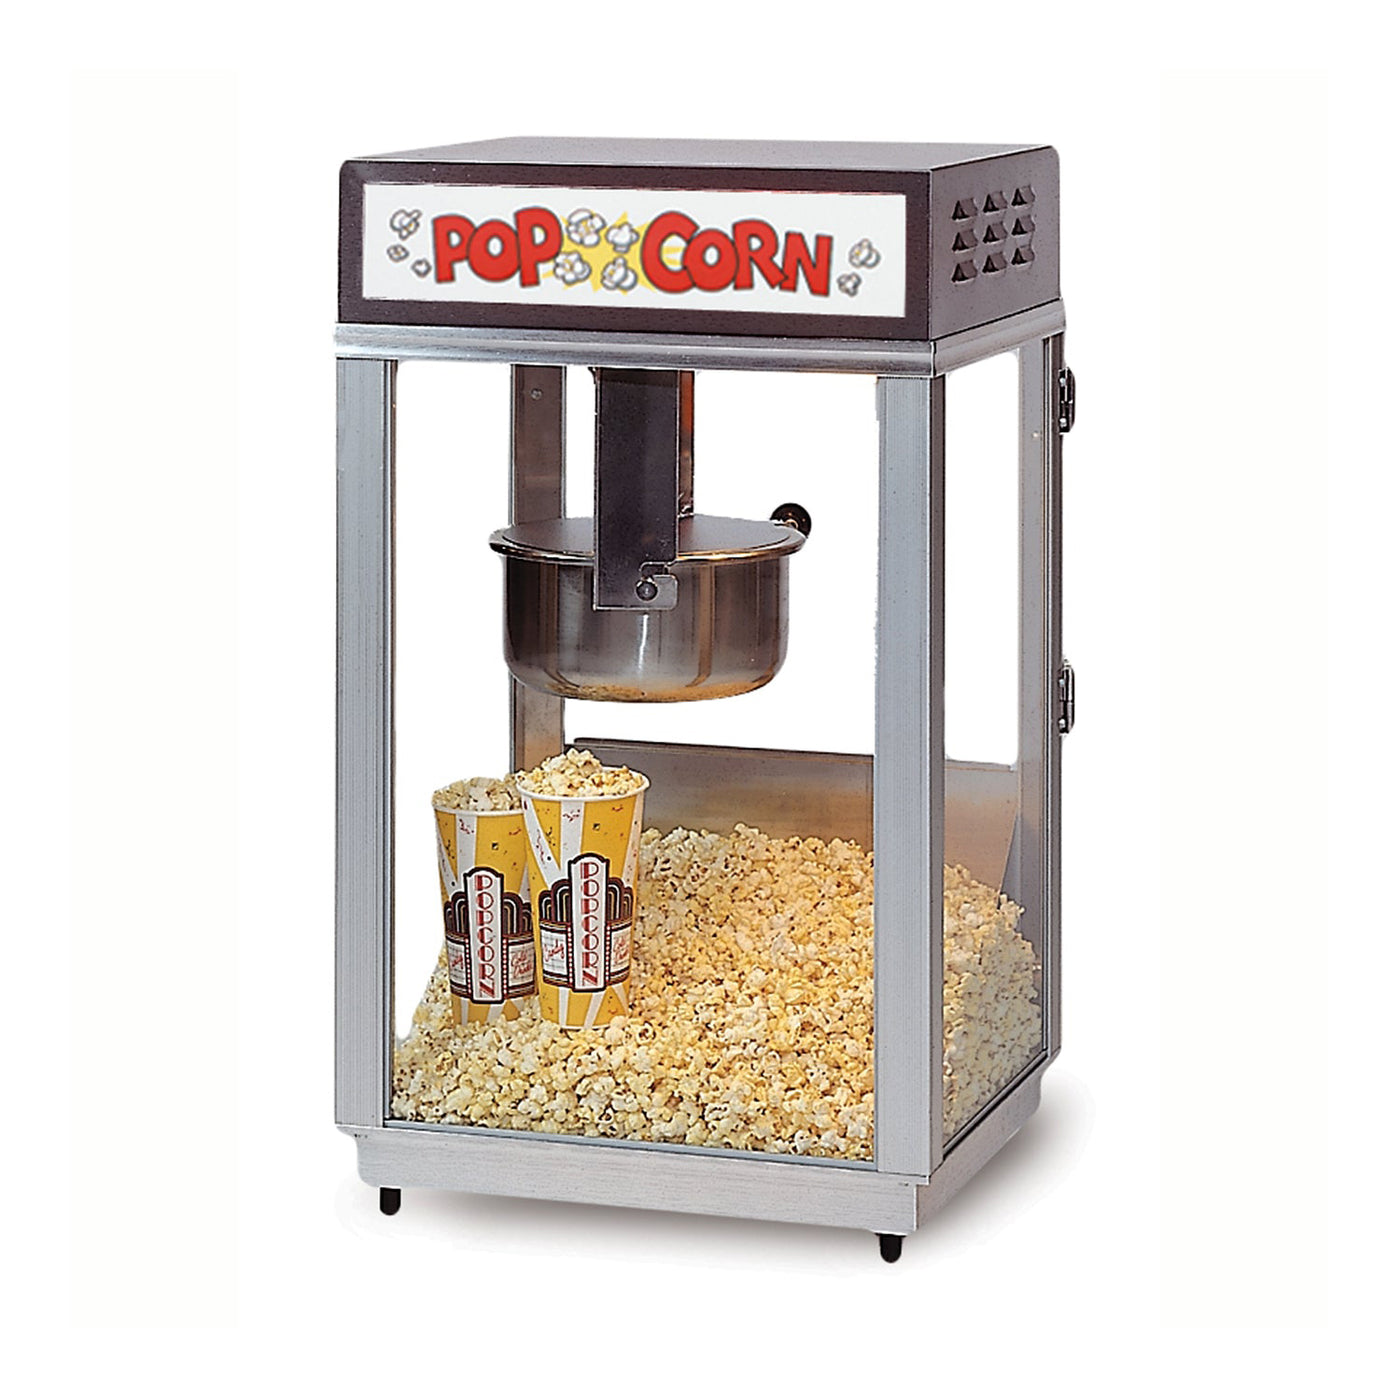 https://shop.gmpopcorn.com/cdn/shop/products/2661bn-popcorn-machine_1400x.jpg?v=1653417963